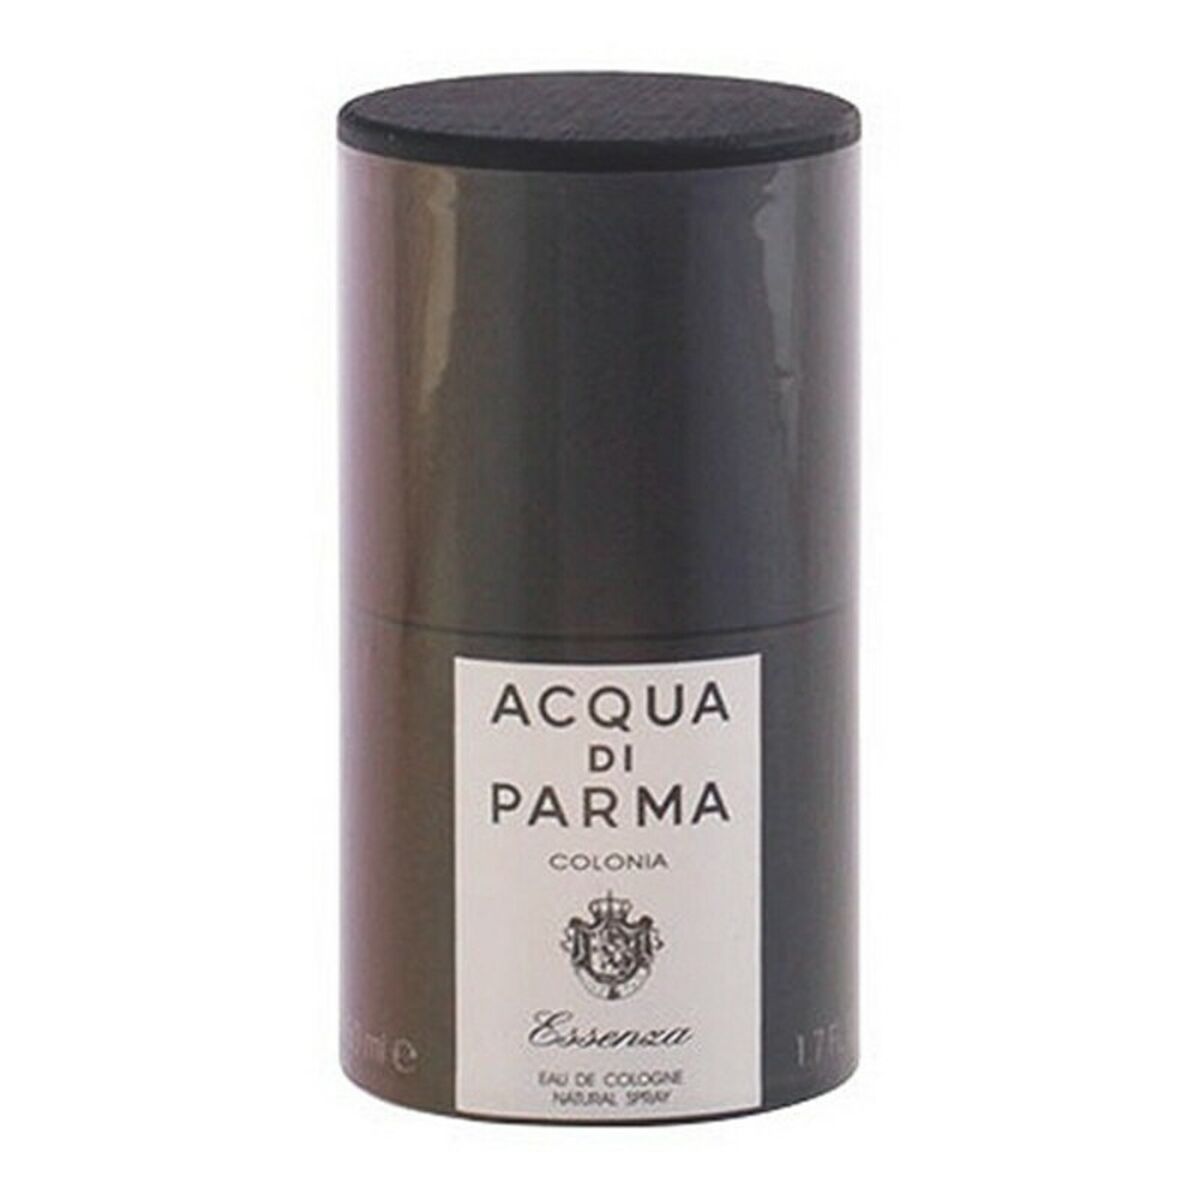 Perfume Unisex Acqua Di Parma Essenza EDC